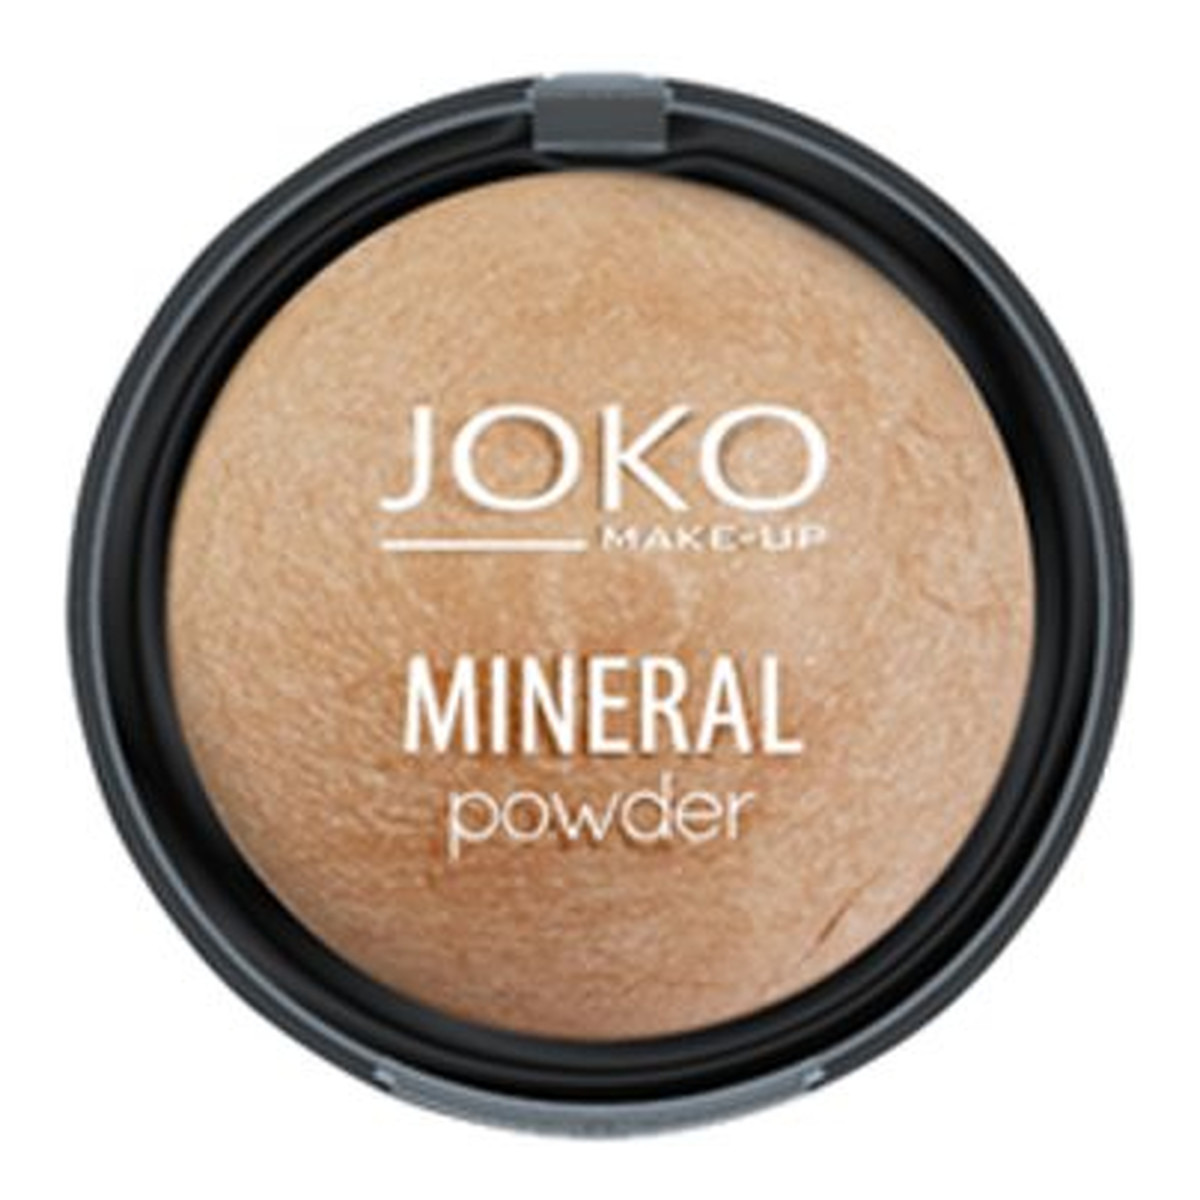 Joko Make-Up mineralny puder rozświetlający 8g